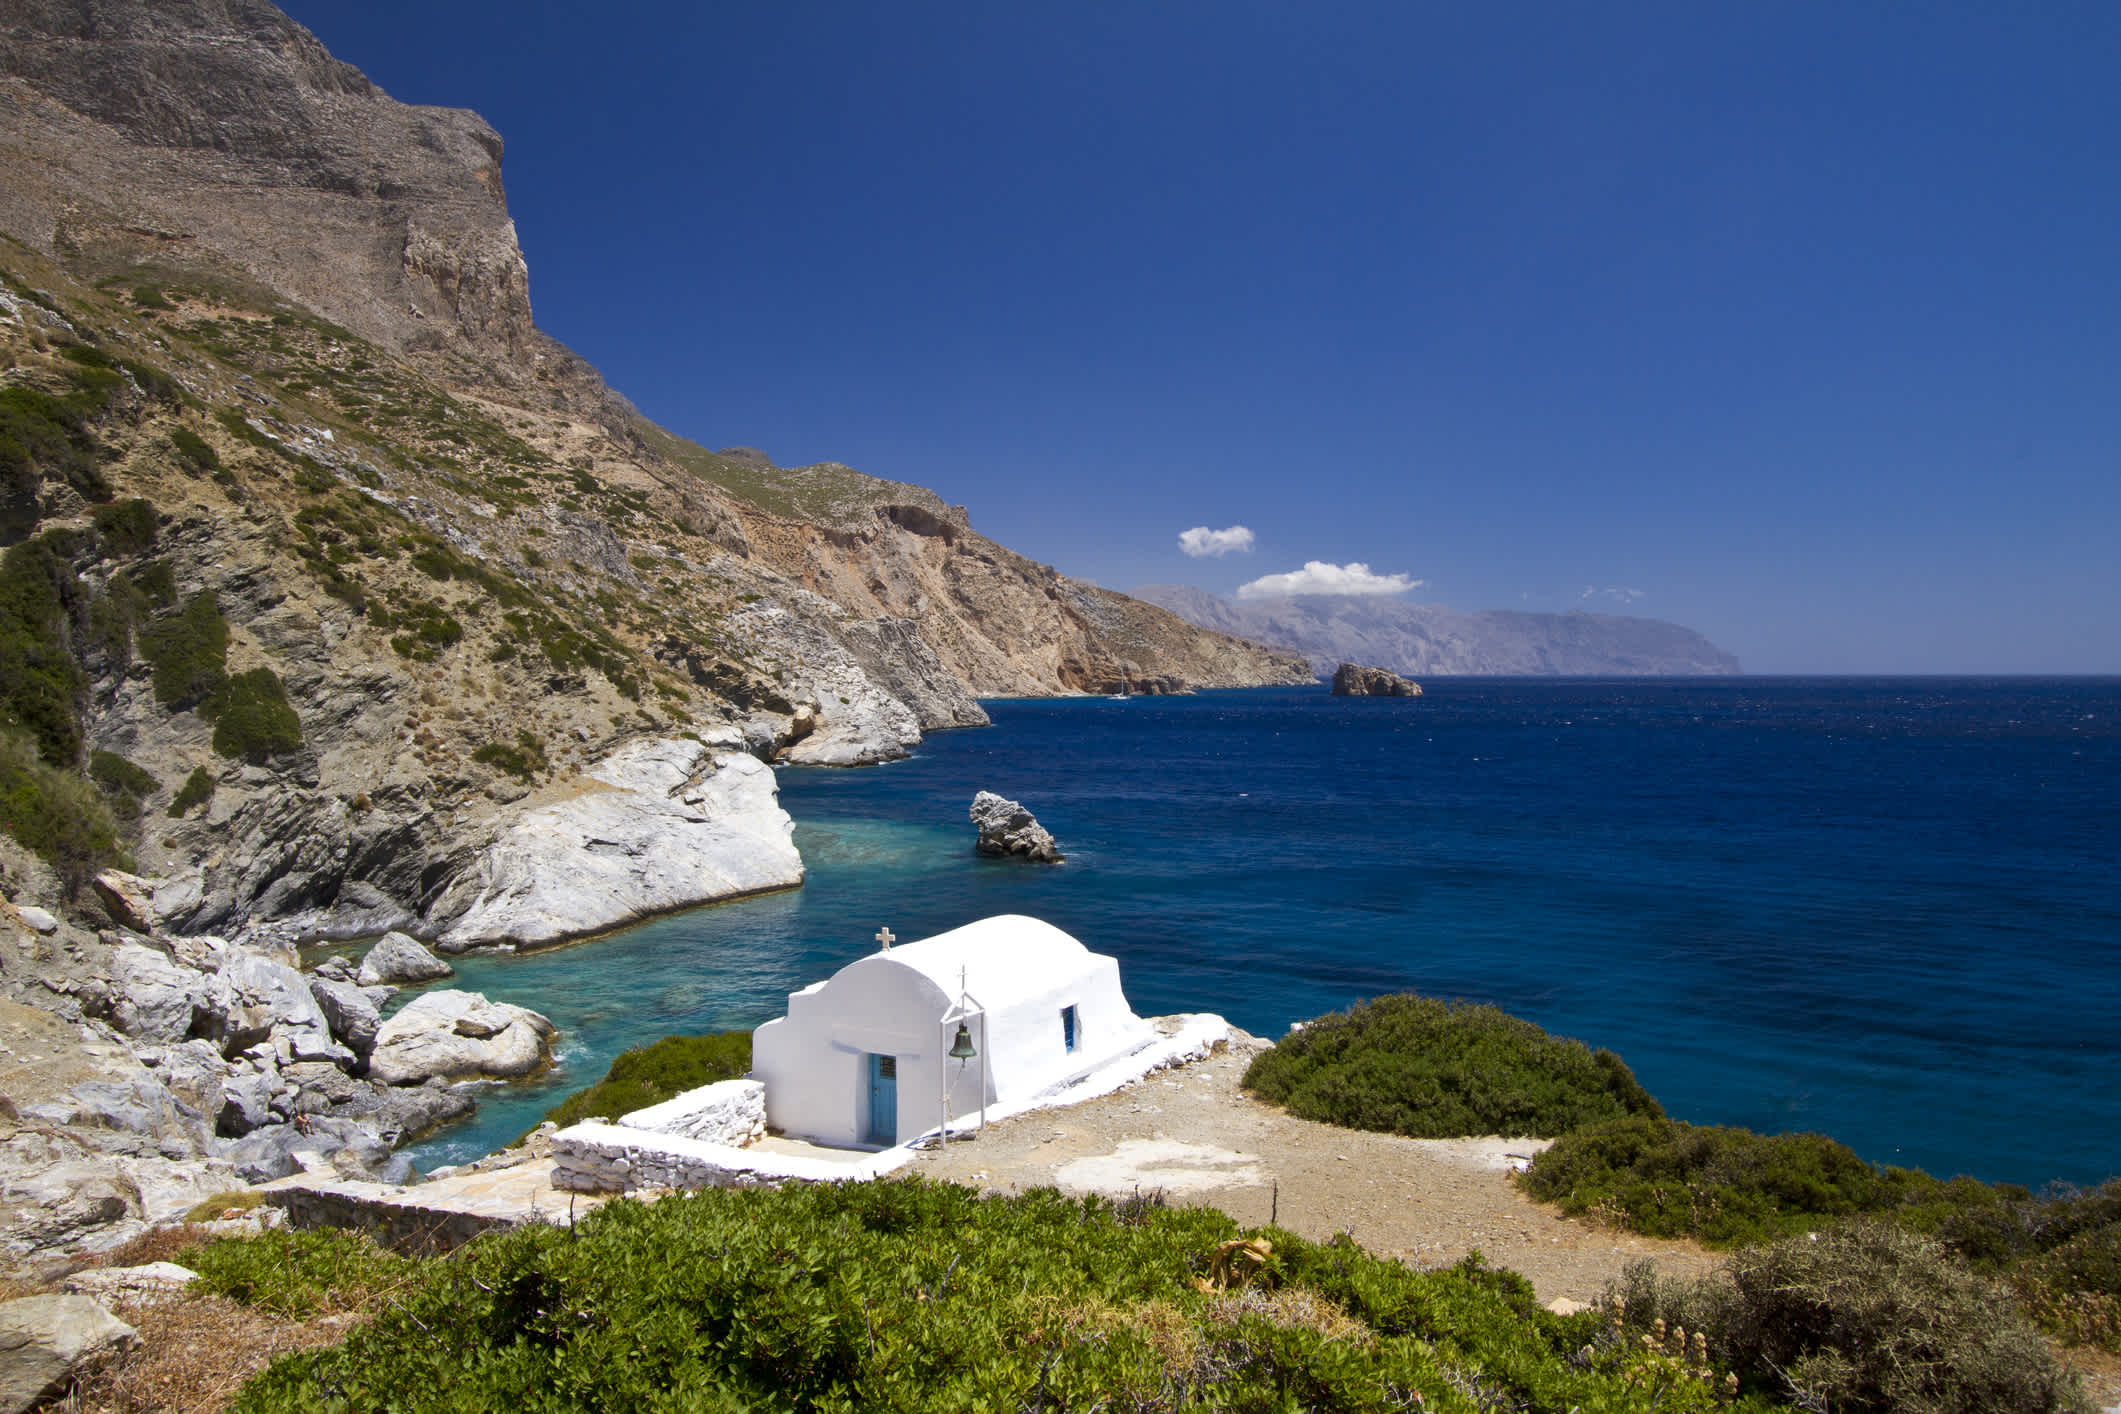 Côte idyllique d'Amorgos, dans les Cyclades en Grèce, avec une petite chapelle qui surveille la côte.